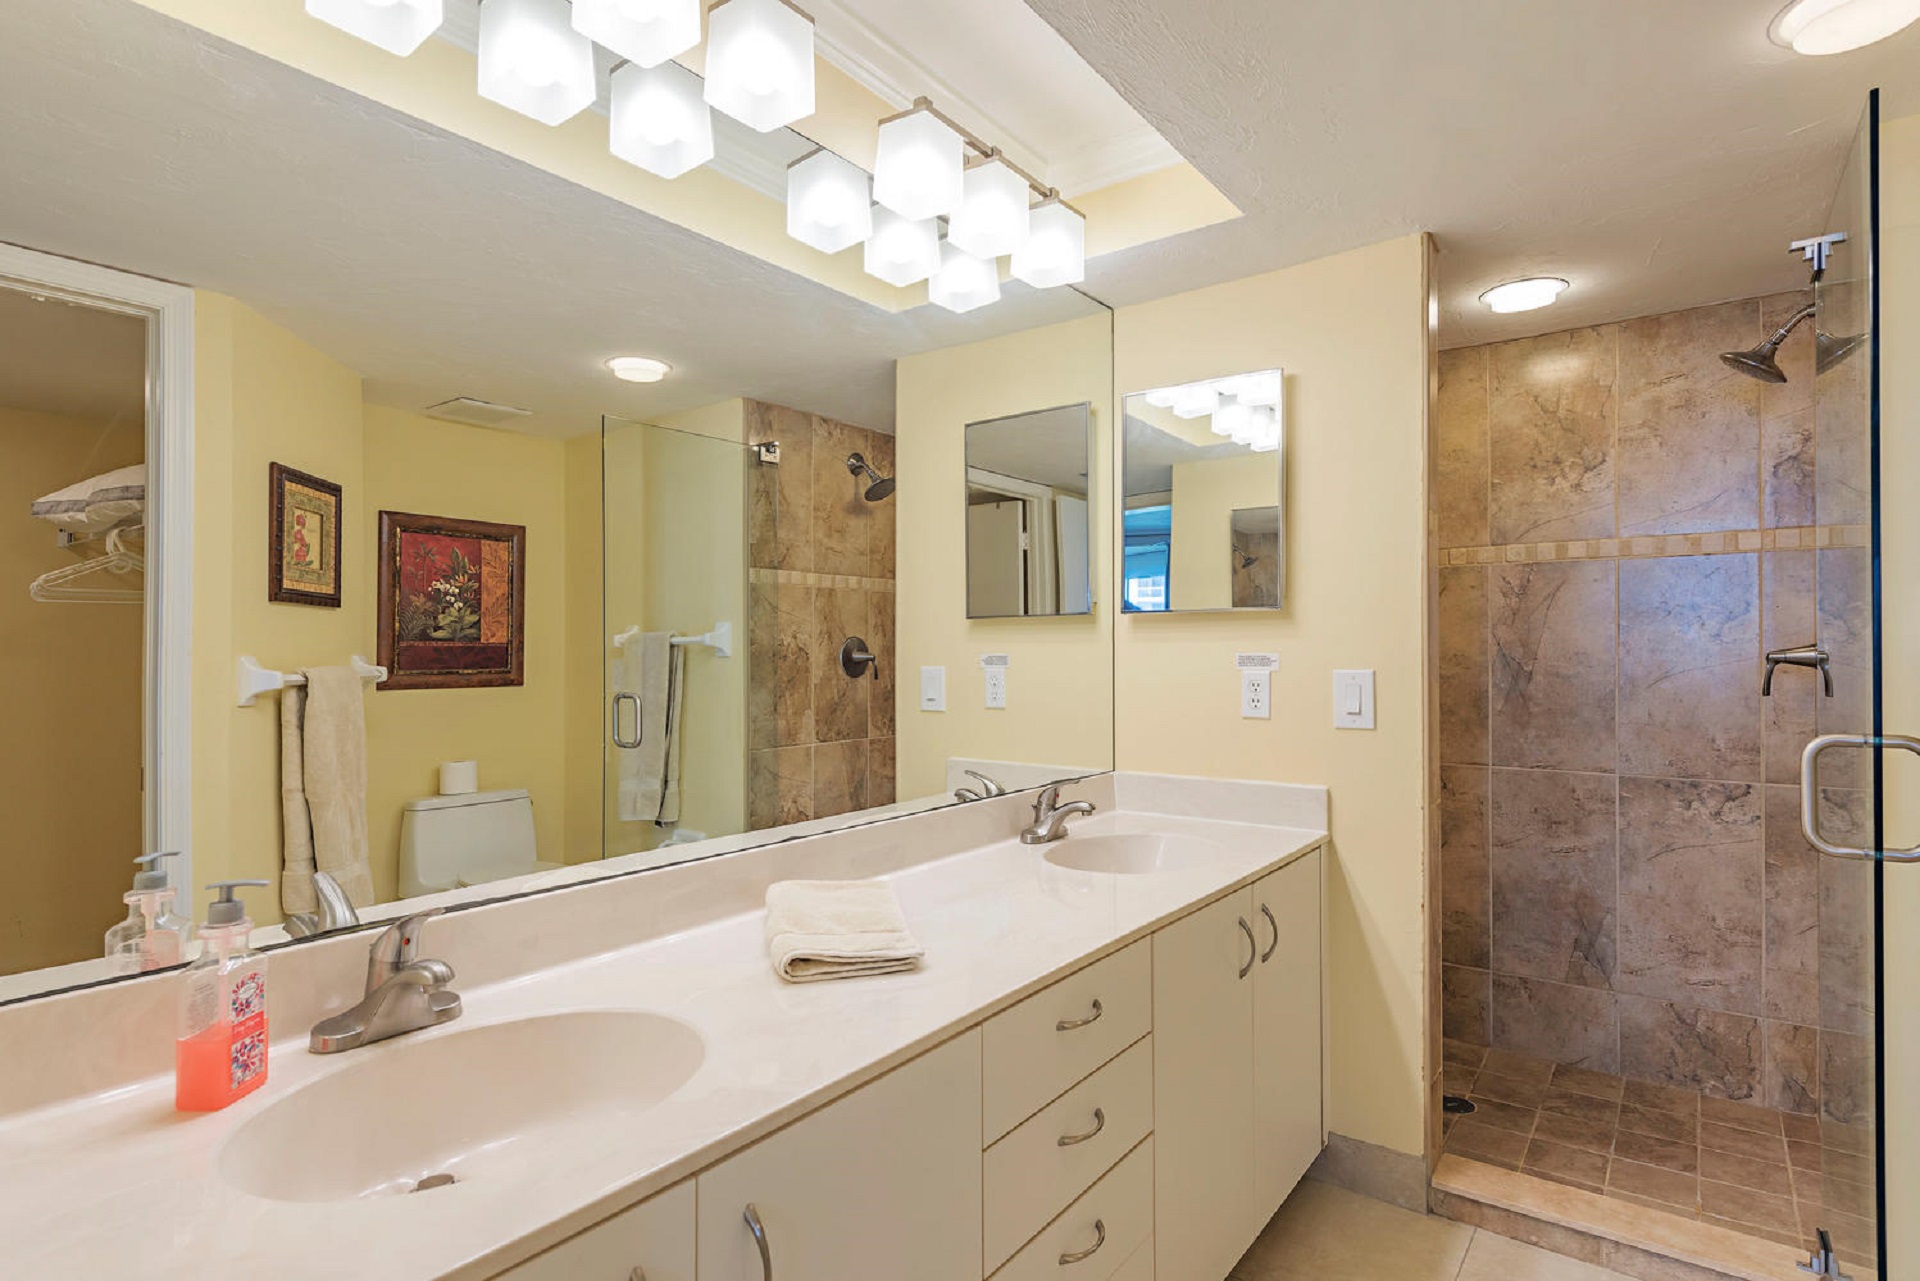 Master Bathroom New Tile Shower & Glass Door, Tile floor, Plumbing hardware,